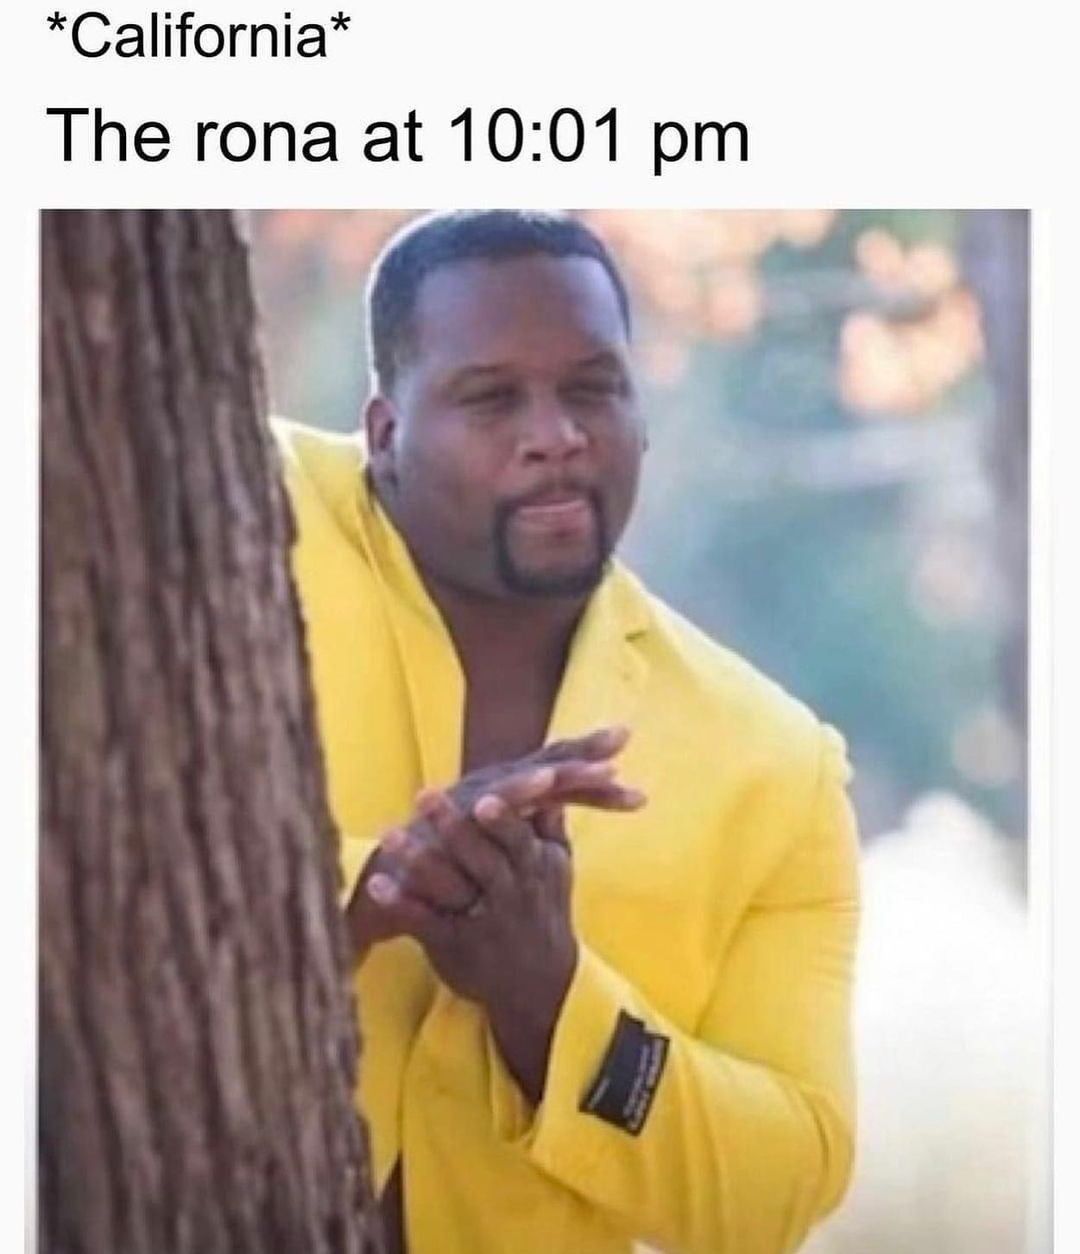 *California* The rona at 10:01 pm.